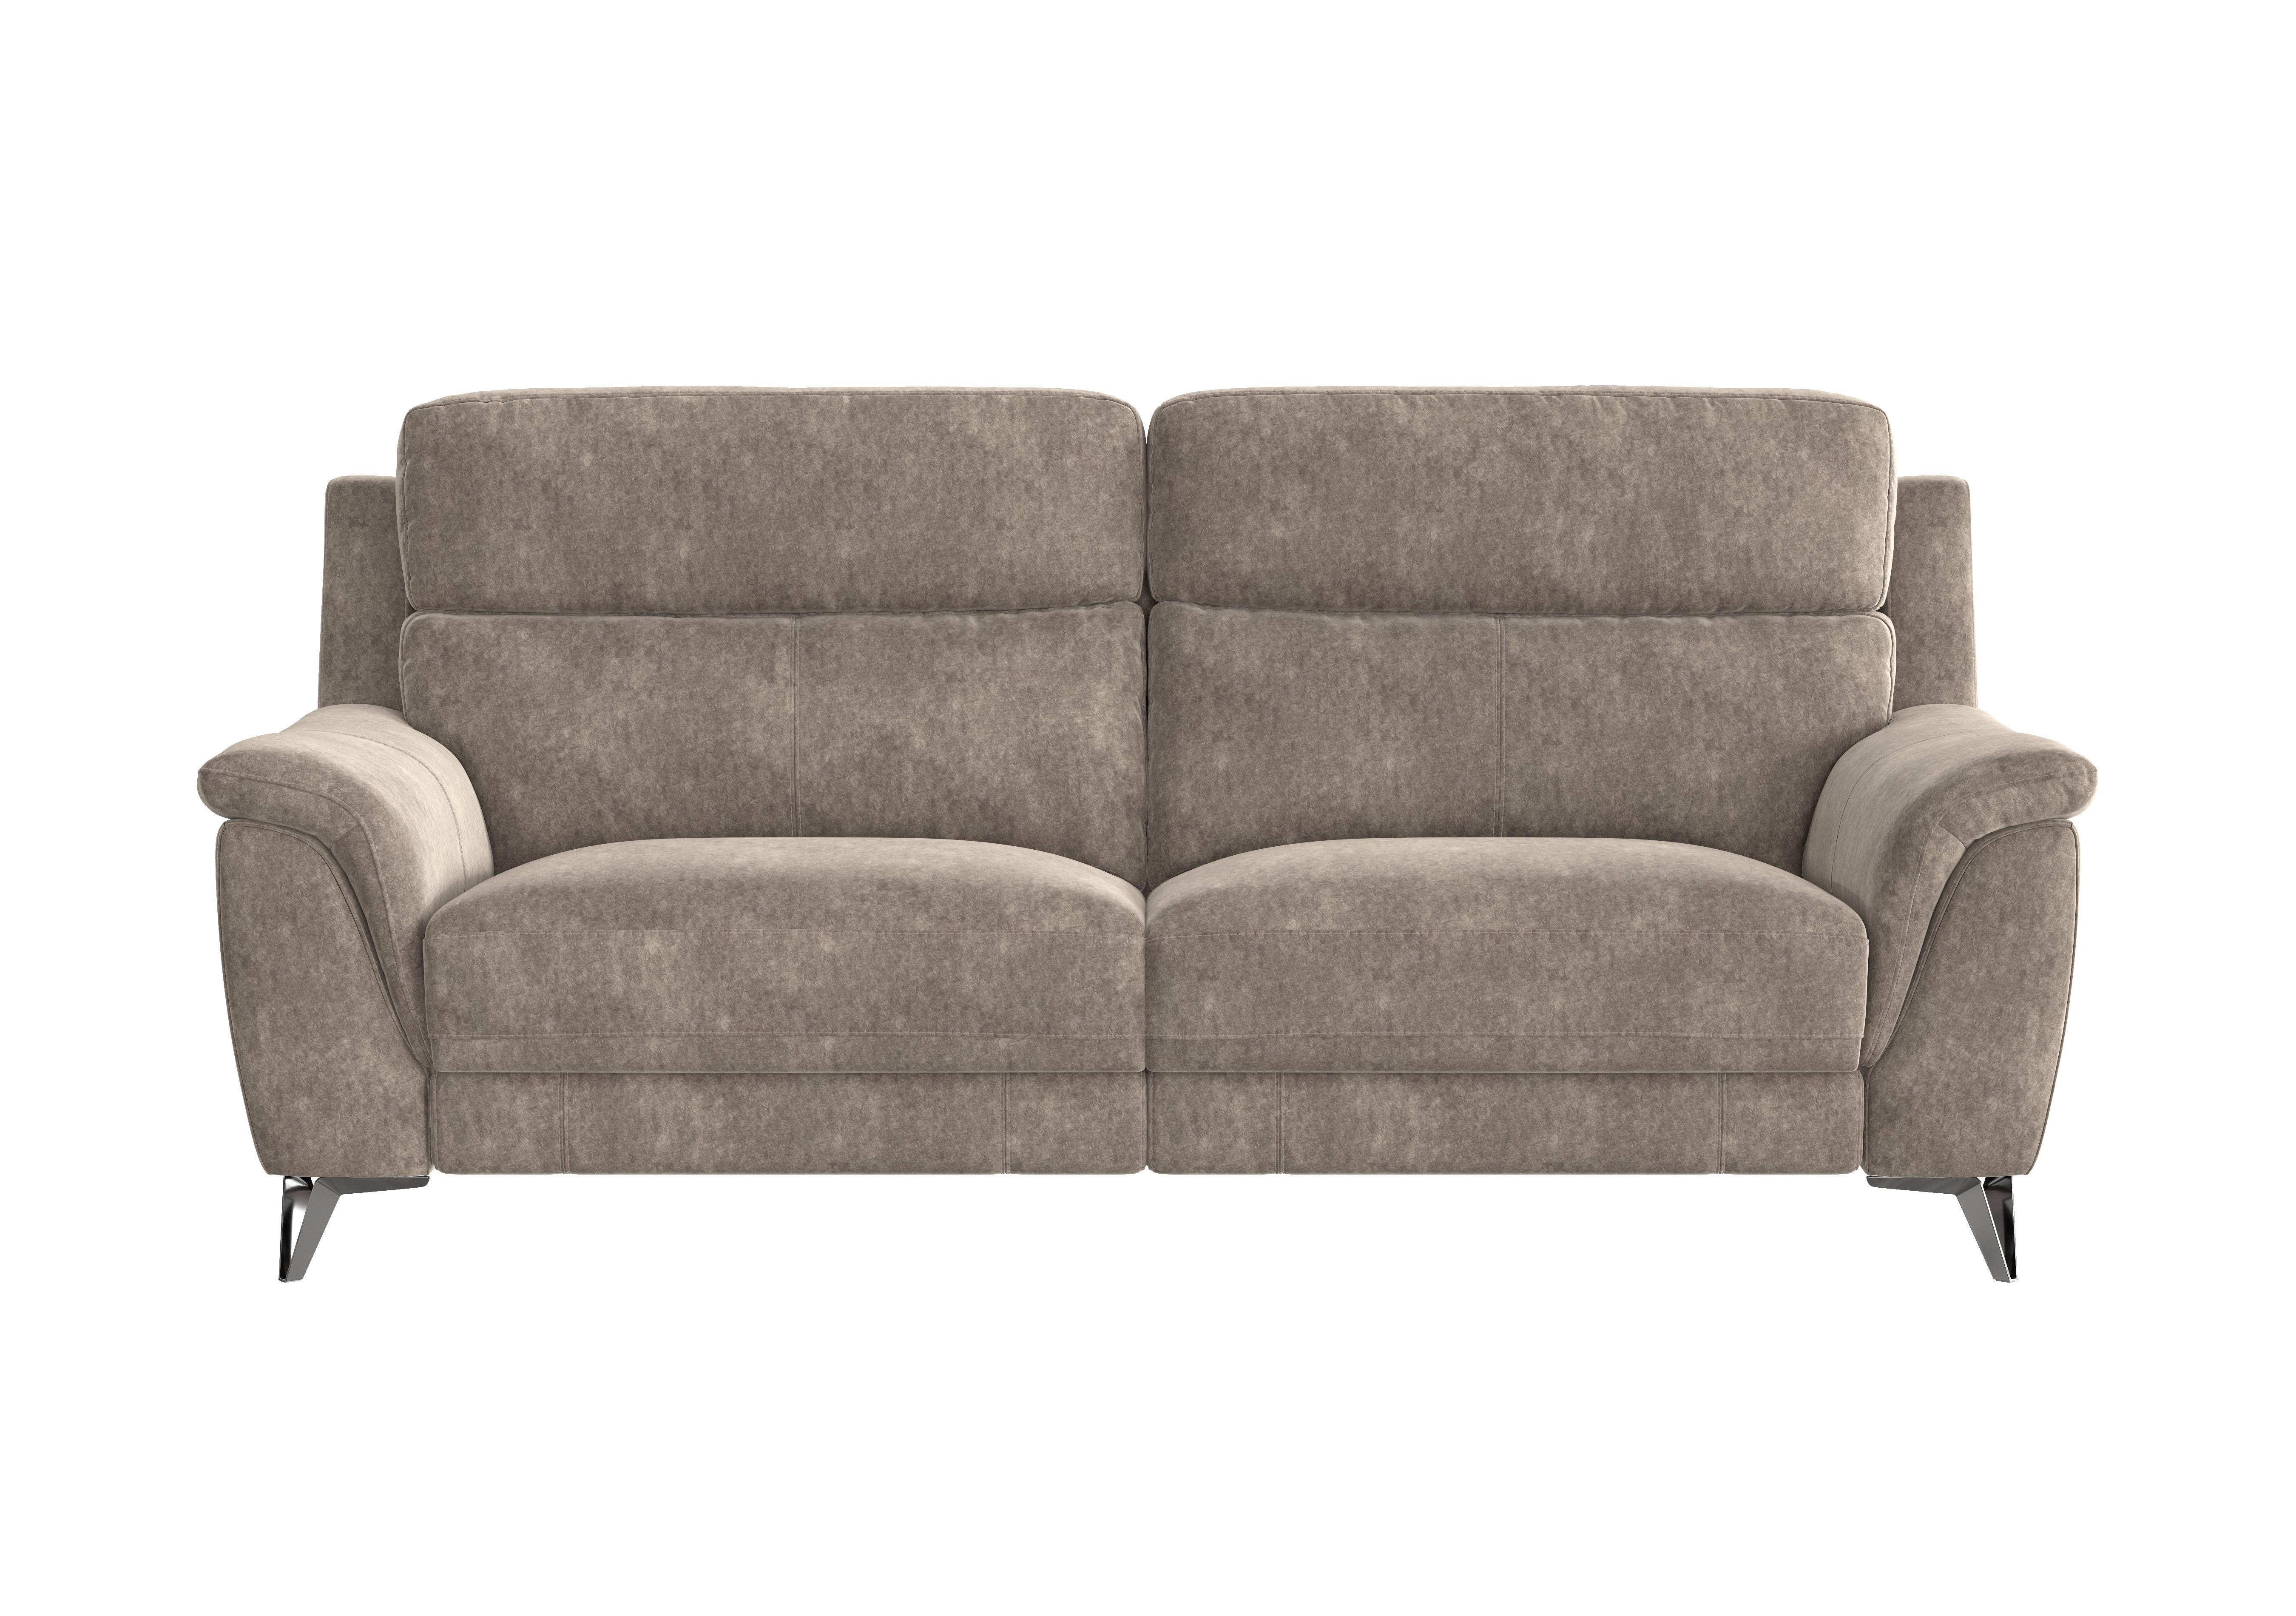 Contempo 3 Seater Fabric Sofa in Bfa-Bnn-R29 Fv1 Mink on Furniture Village